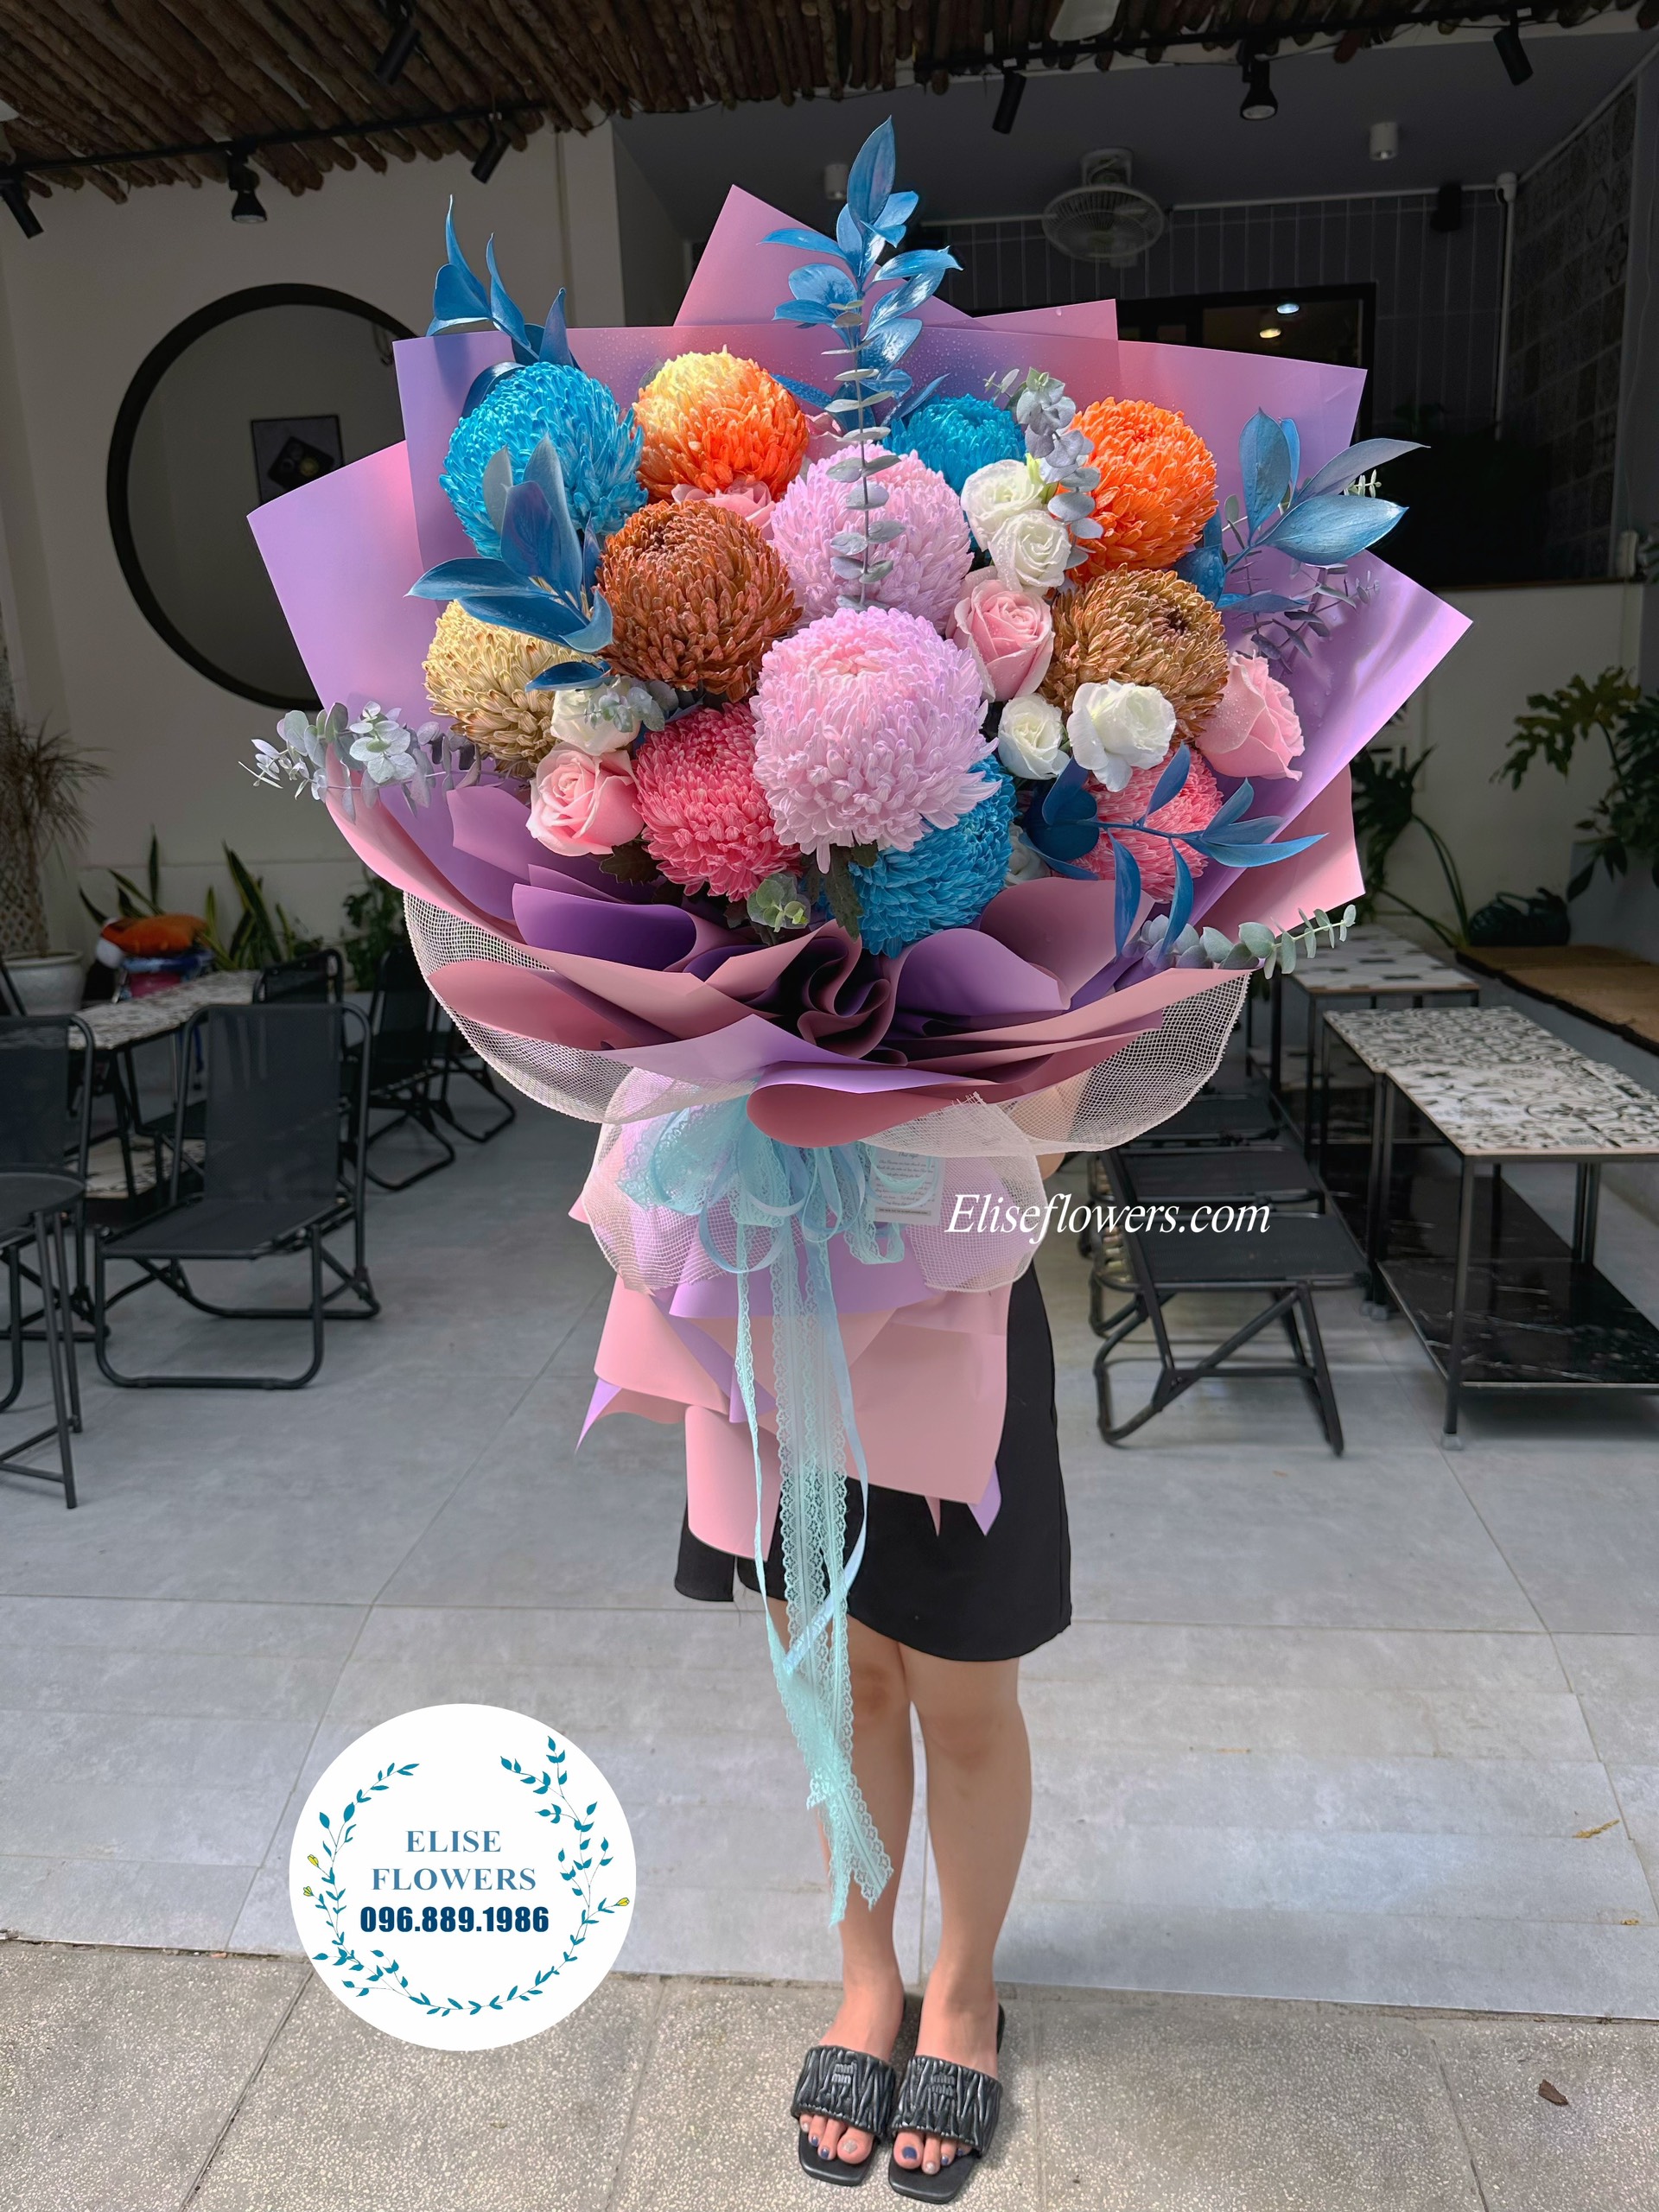 Bó hoa cúc mẫu đơn đại đoá tặng sinh nhật. Đặt bó hoa sinh nhật đẹp tại tiệm hoa Eliseflowers